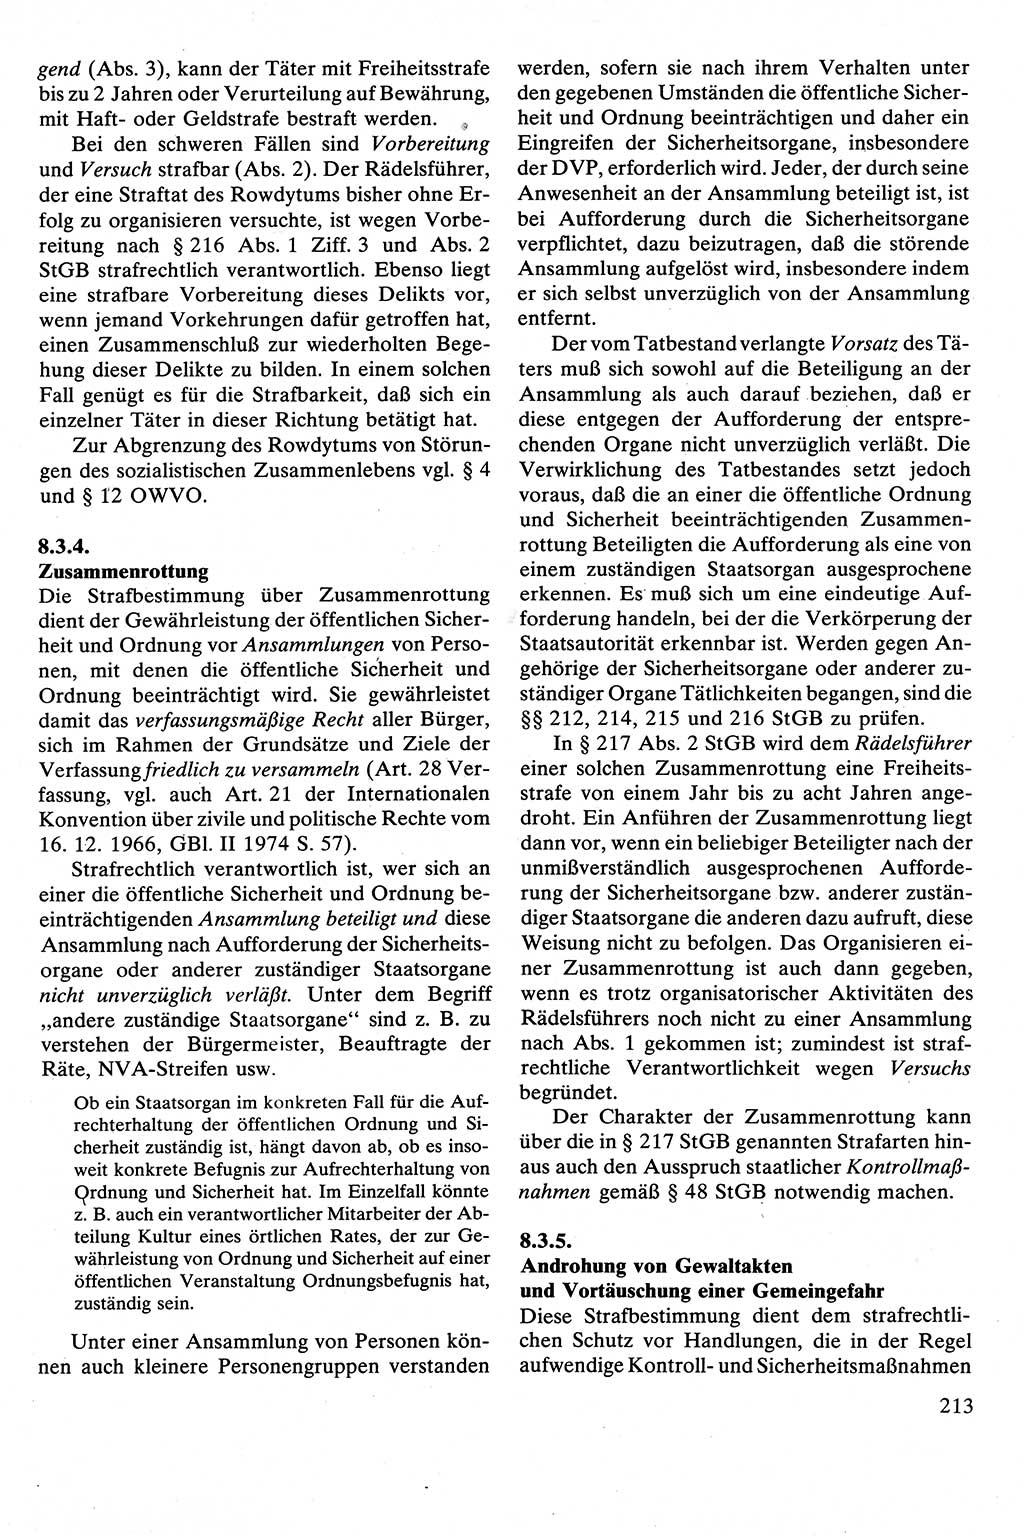 Strafrecht [Deutsche Demokratische Republik (DDR)], Besonderer Teil, Lehrbuch 1981, Seite 213 (Strafr. DDR BT Lb. 1981, S. 213)